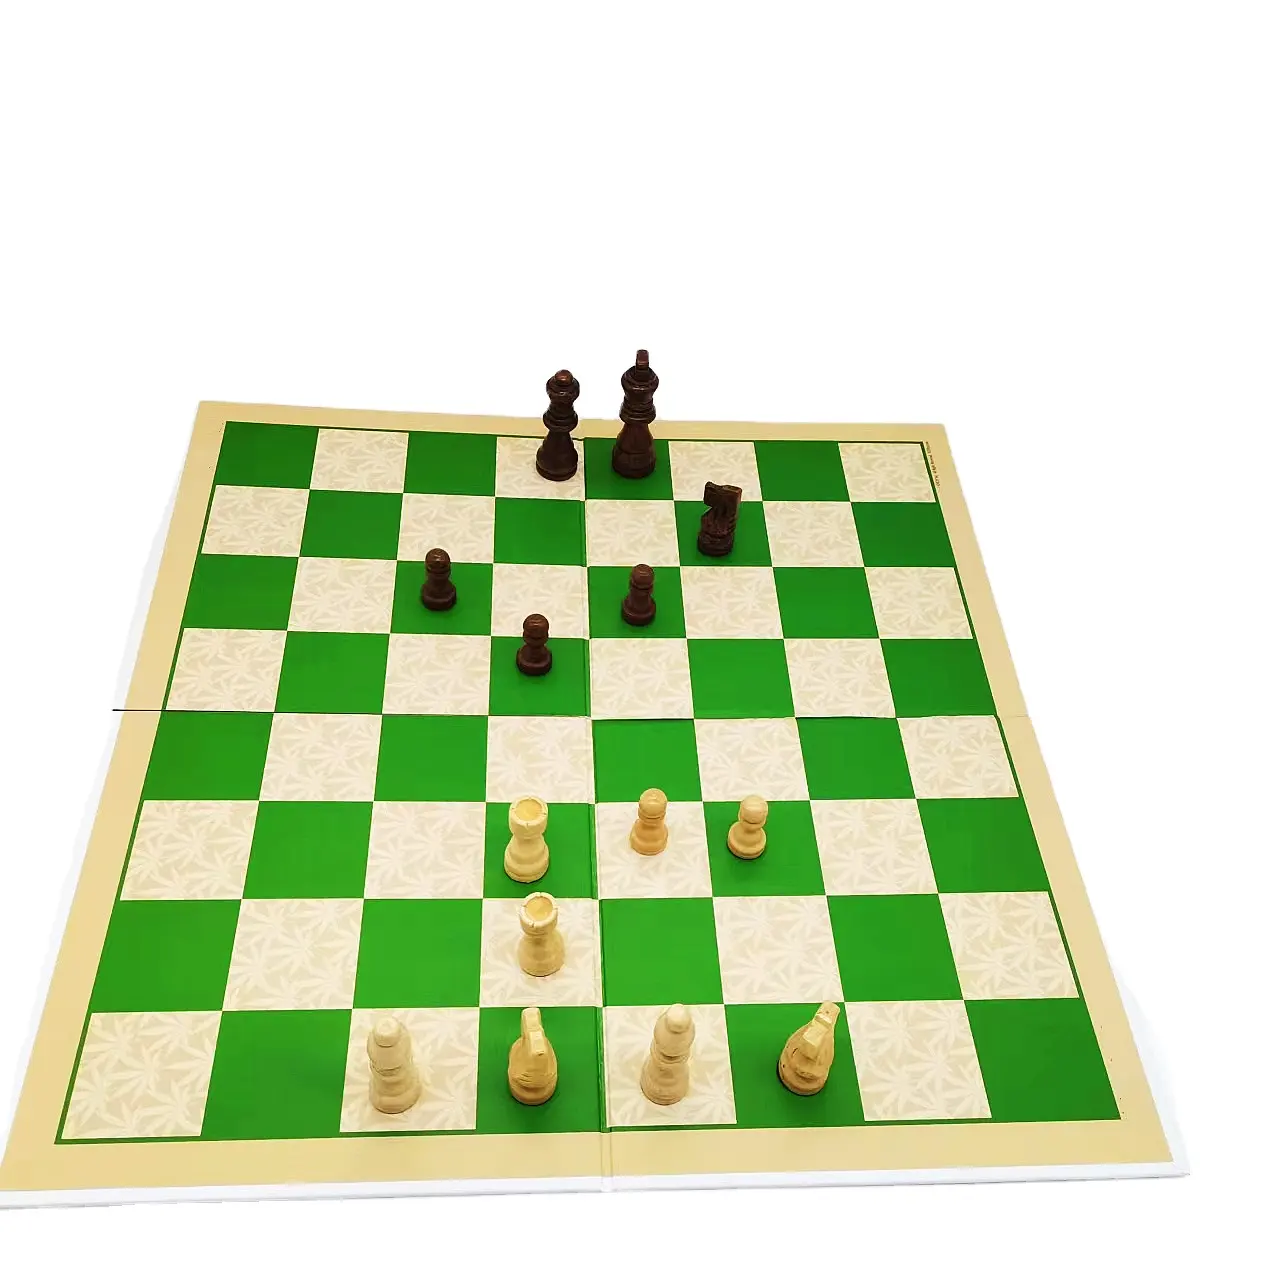 Son derece tavsiye ürün ucuz kağıt taşınabilir satranç tahtası kutu paketi ile ve satranç adet katlanır satranç tahtası oyun seti